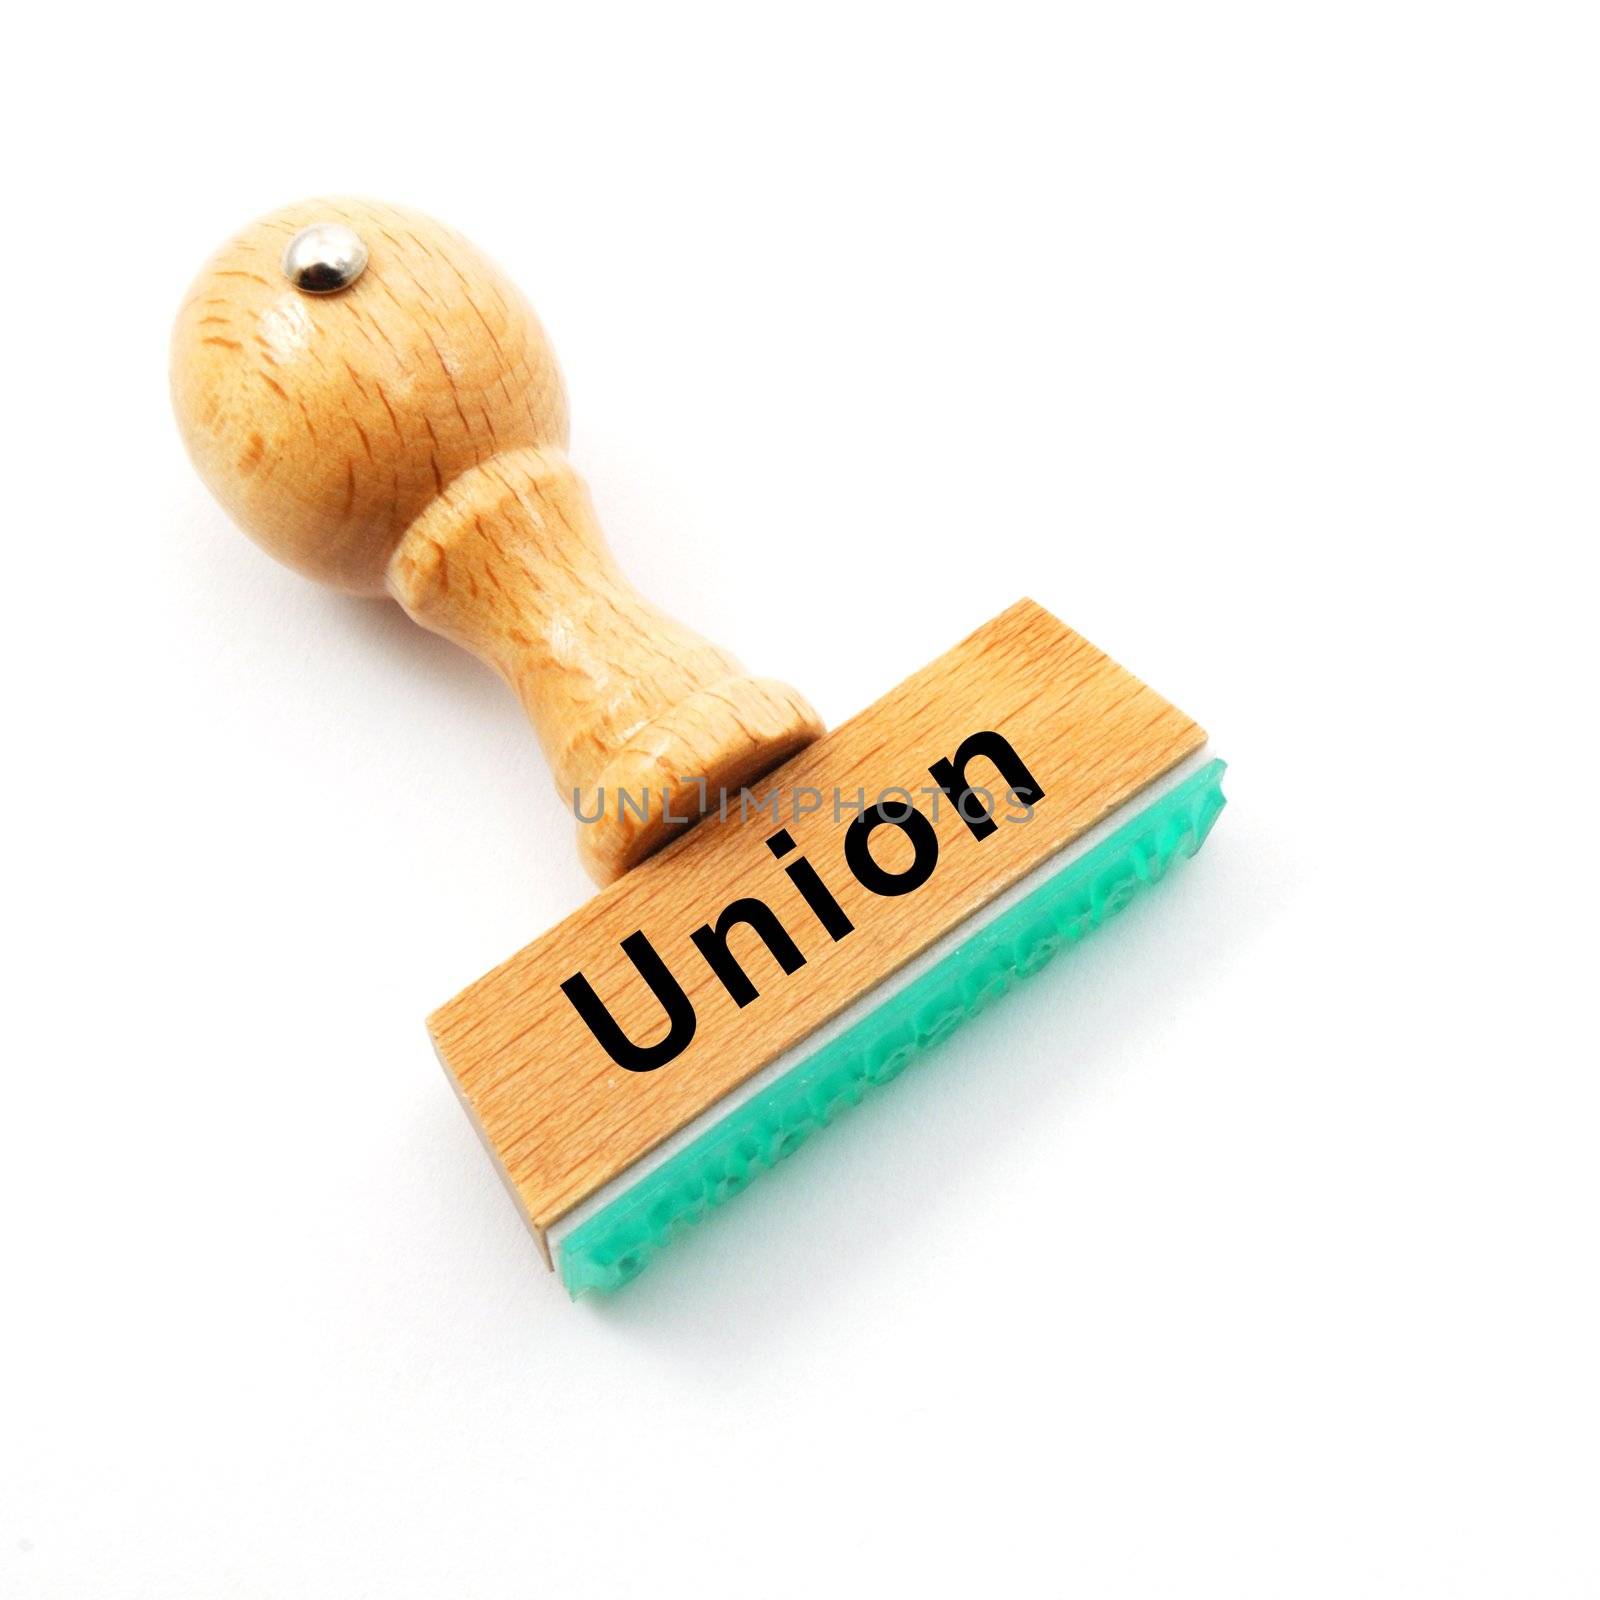 union by gunnar3000